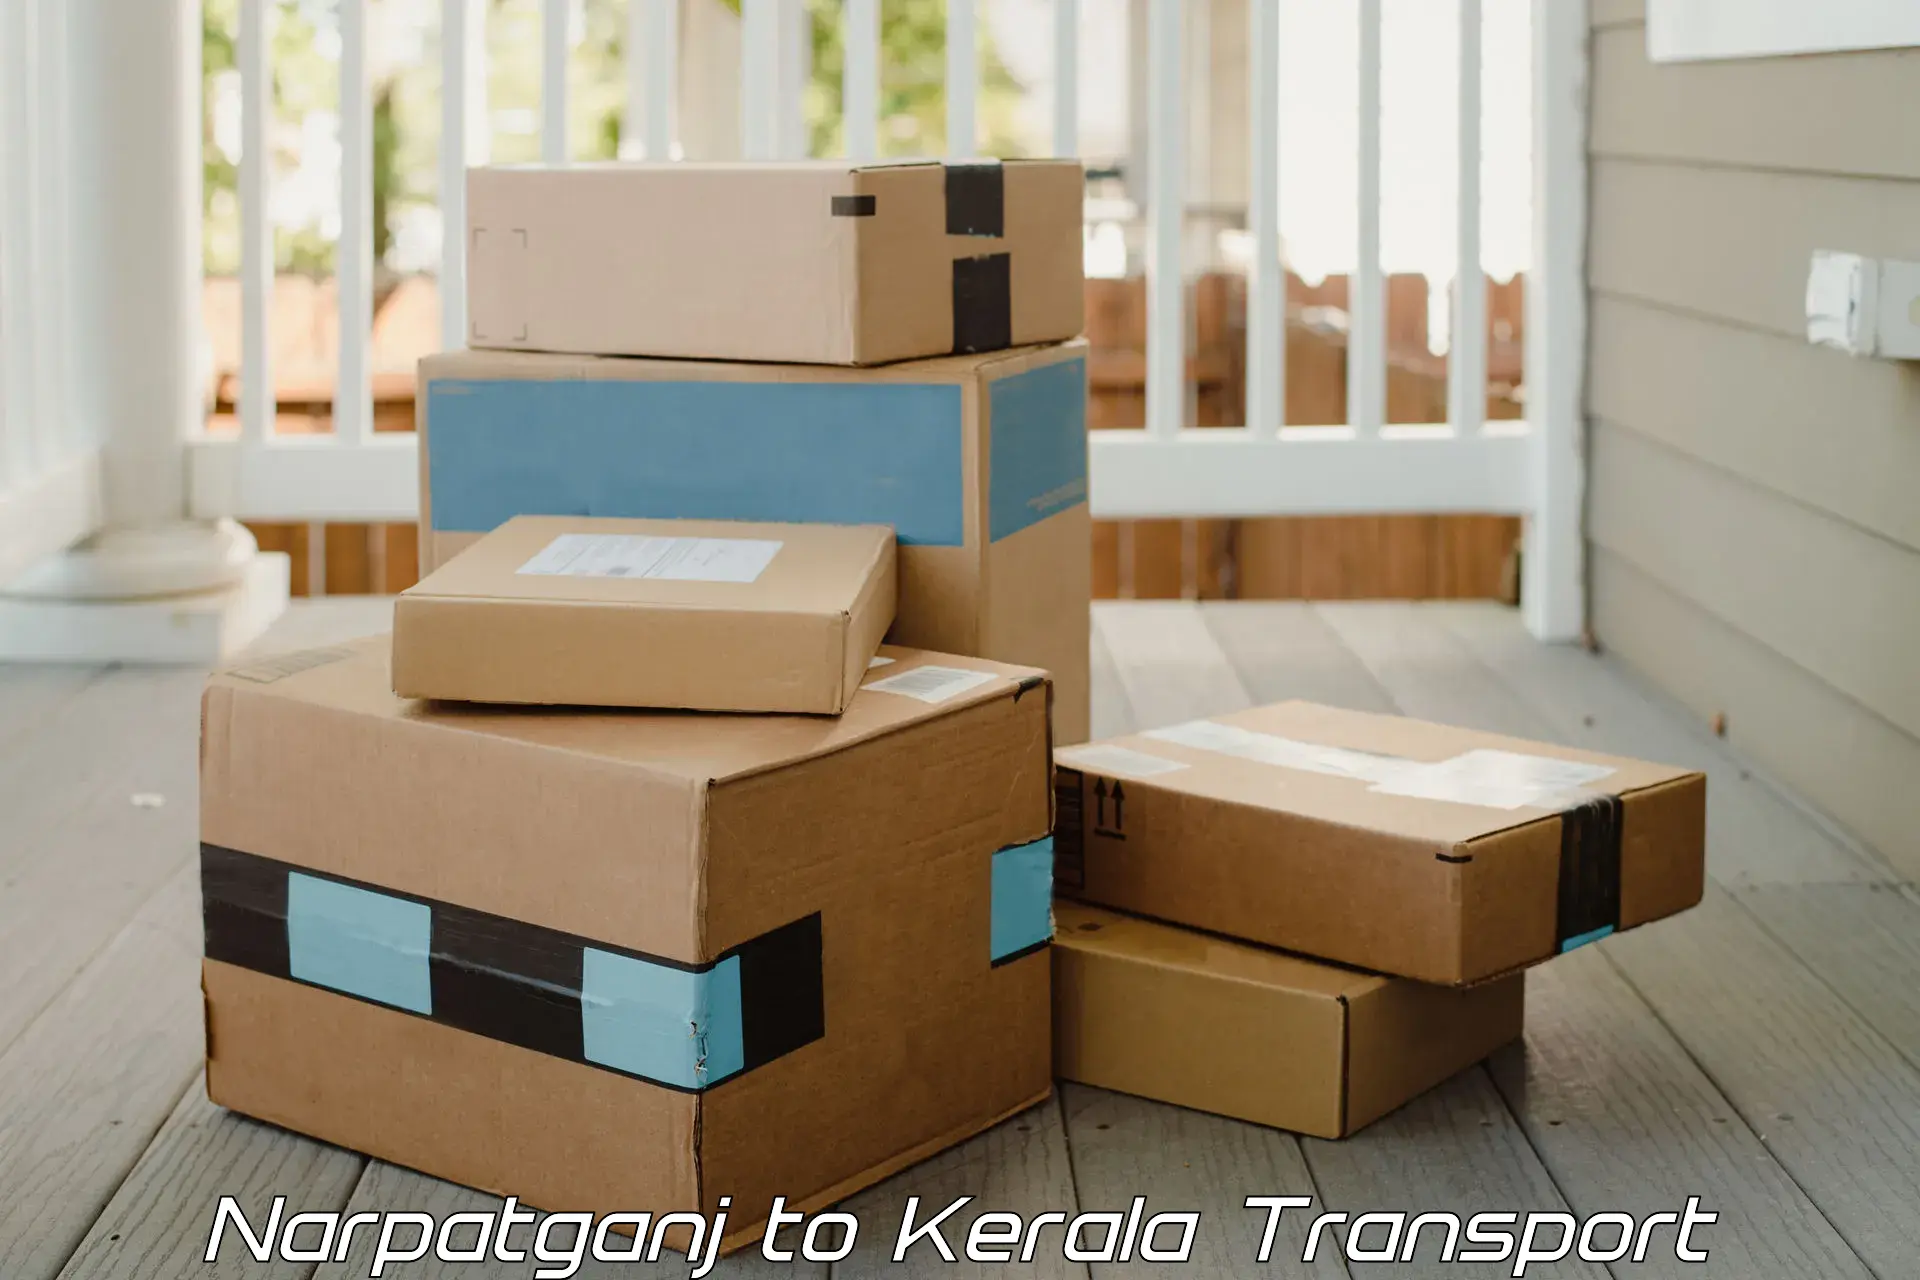 Daily parcel service transport Narpatganj to Kakkayam